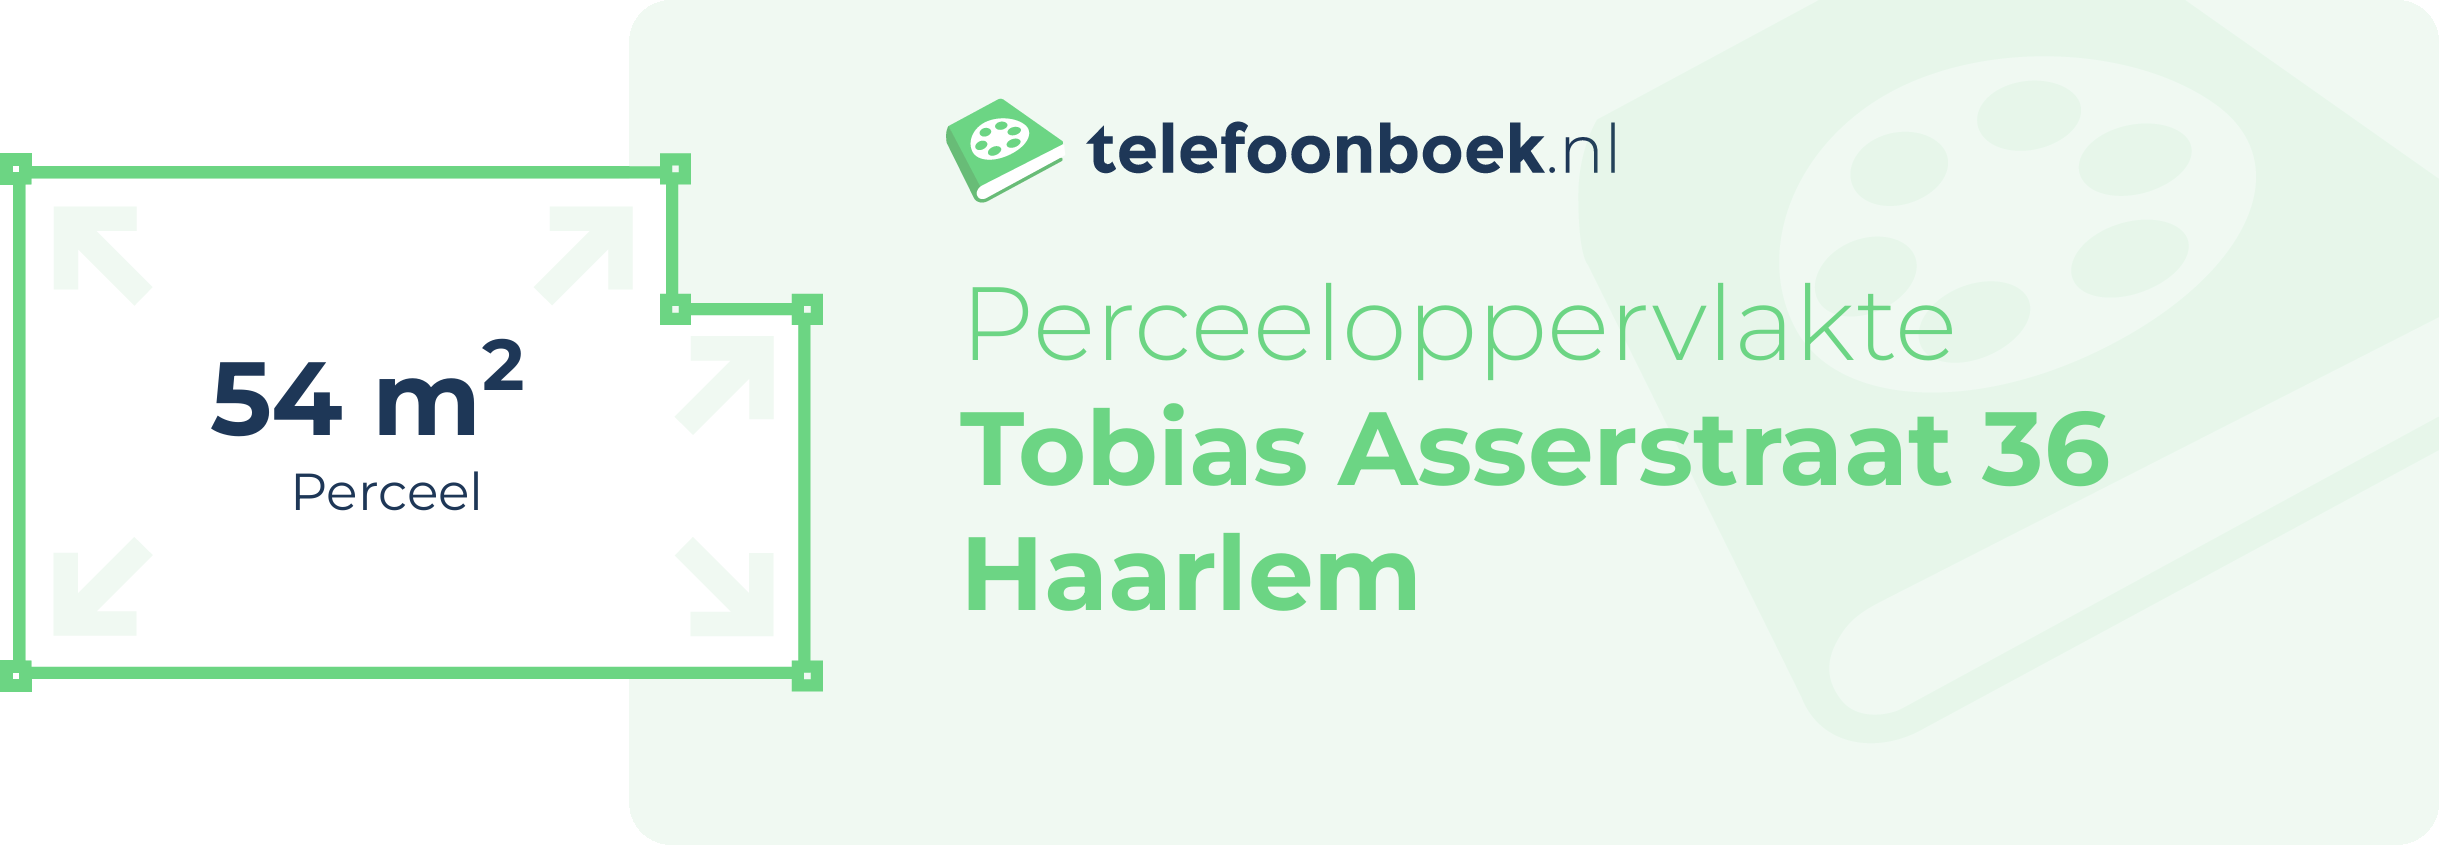 Perceeloppervlakte Tobias Asserstraat 36 Haarlem